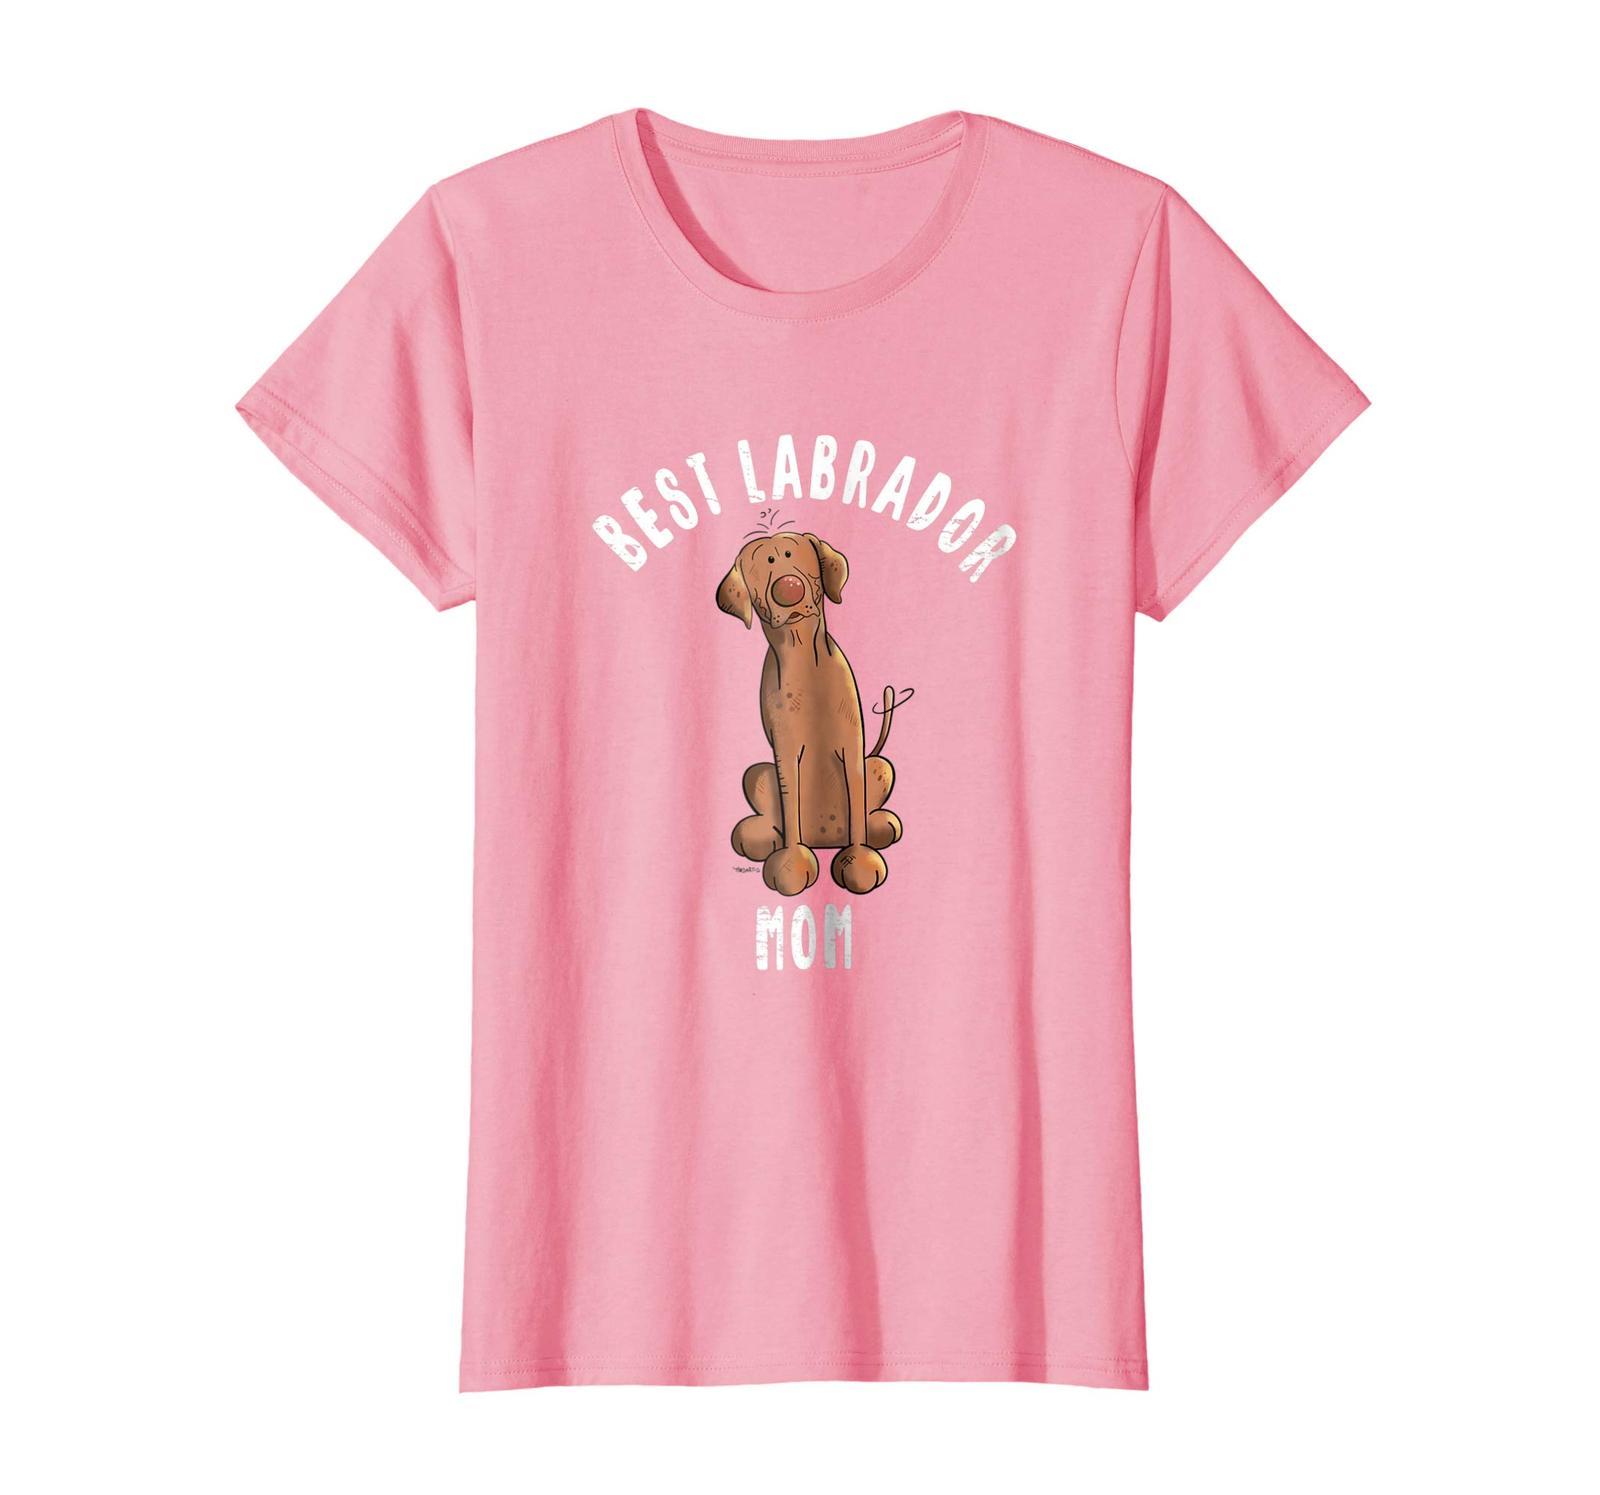 Dog Fashion - Best Labrador Mom Shirt I Chocolate Retriever Dog Gift Wowen